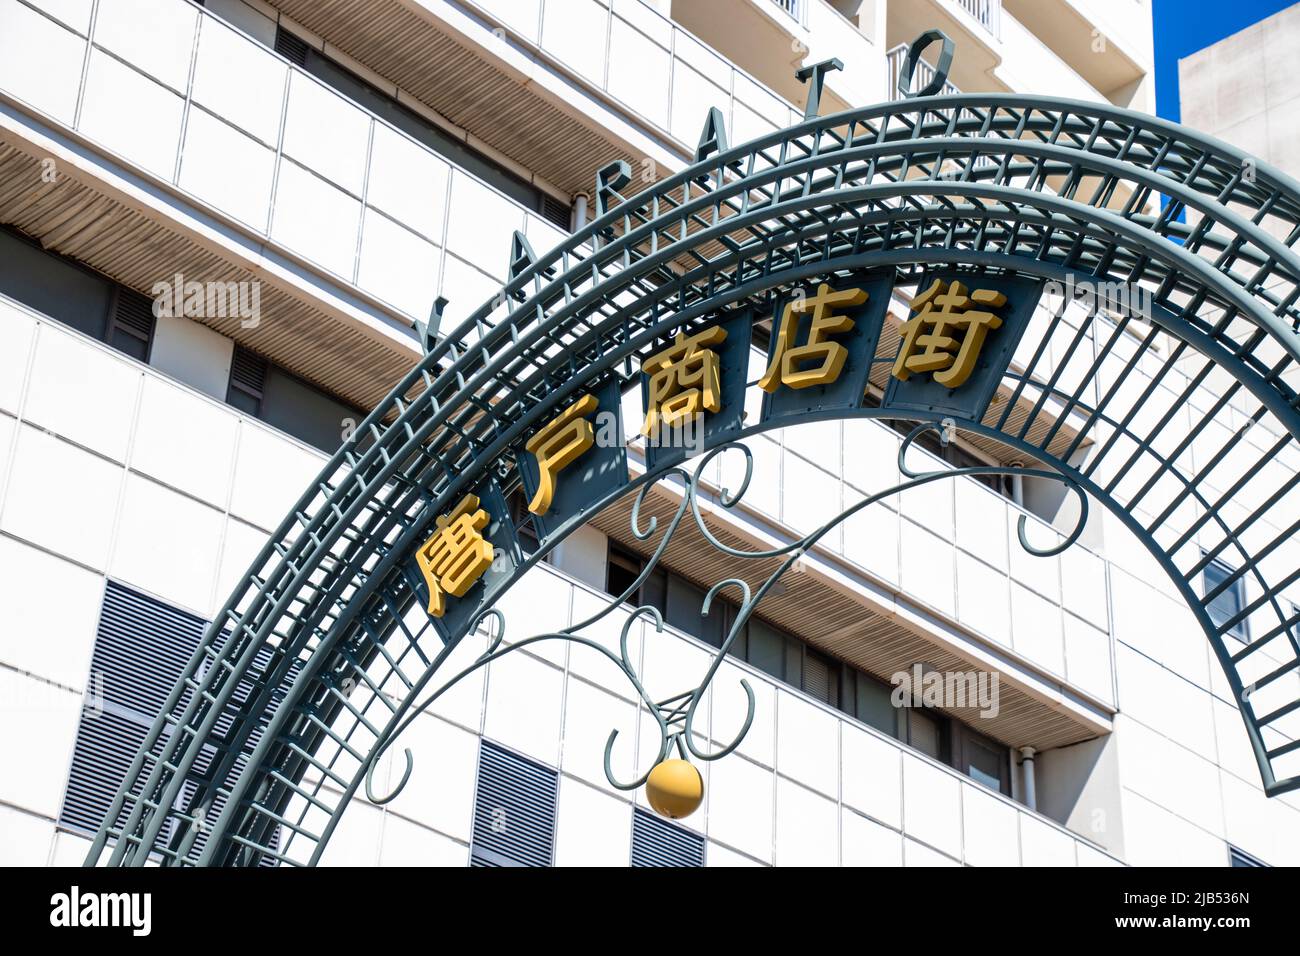 Das Tor der Einkaufsstraße Carato Shoutengai. Carato ist bekannt als einer der berühmtesten Sehenswürdigkeiten in der Präfektur Yamaguchi Stockfoto